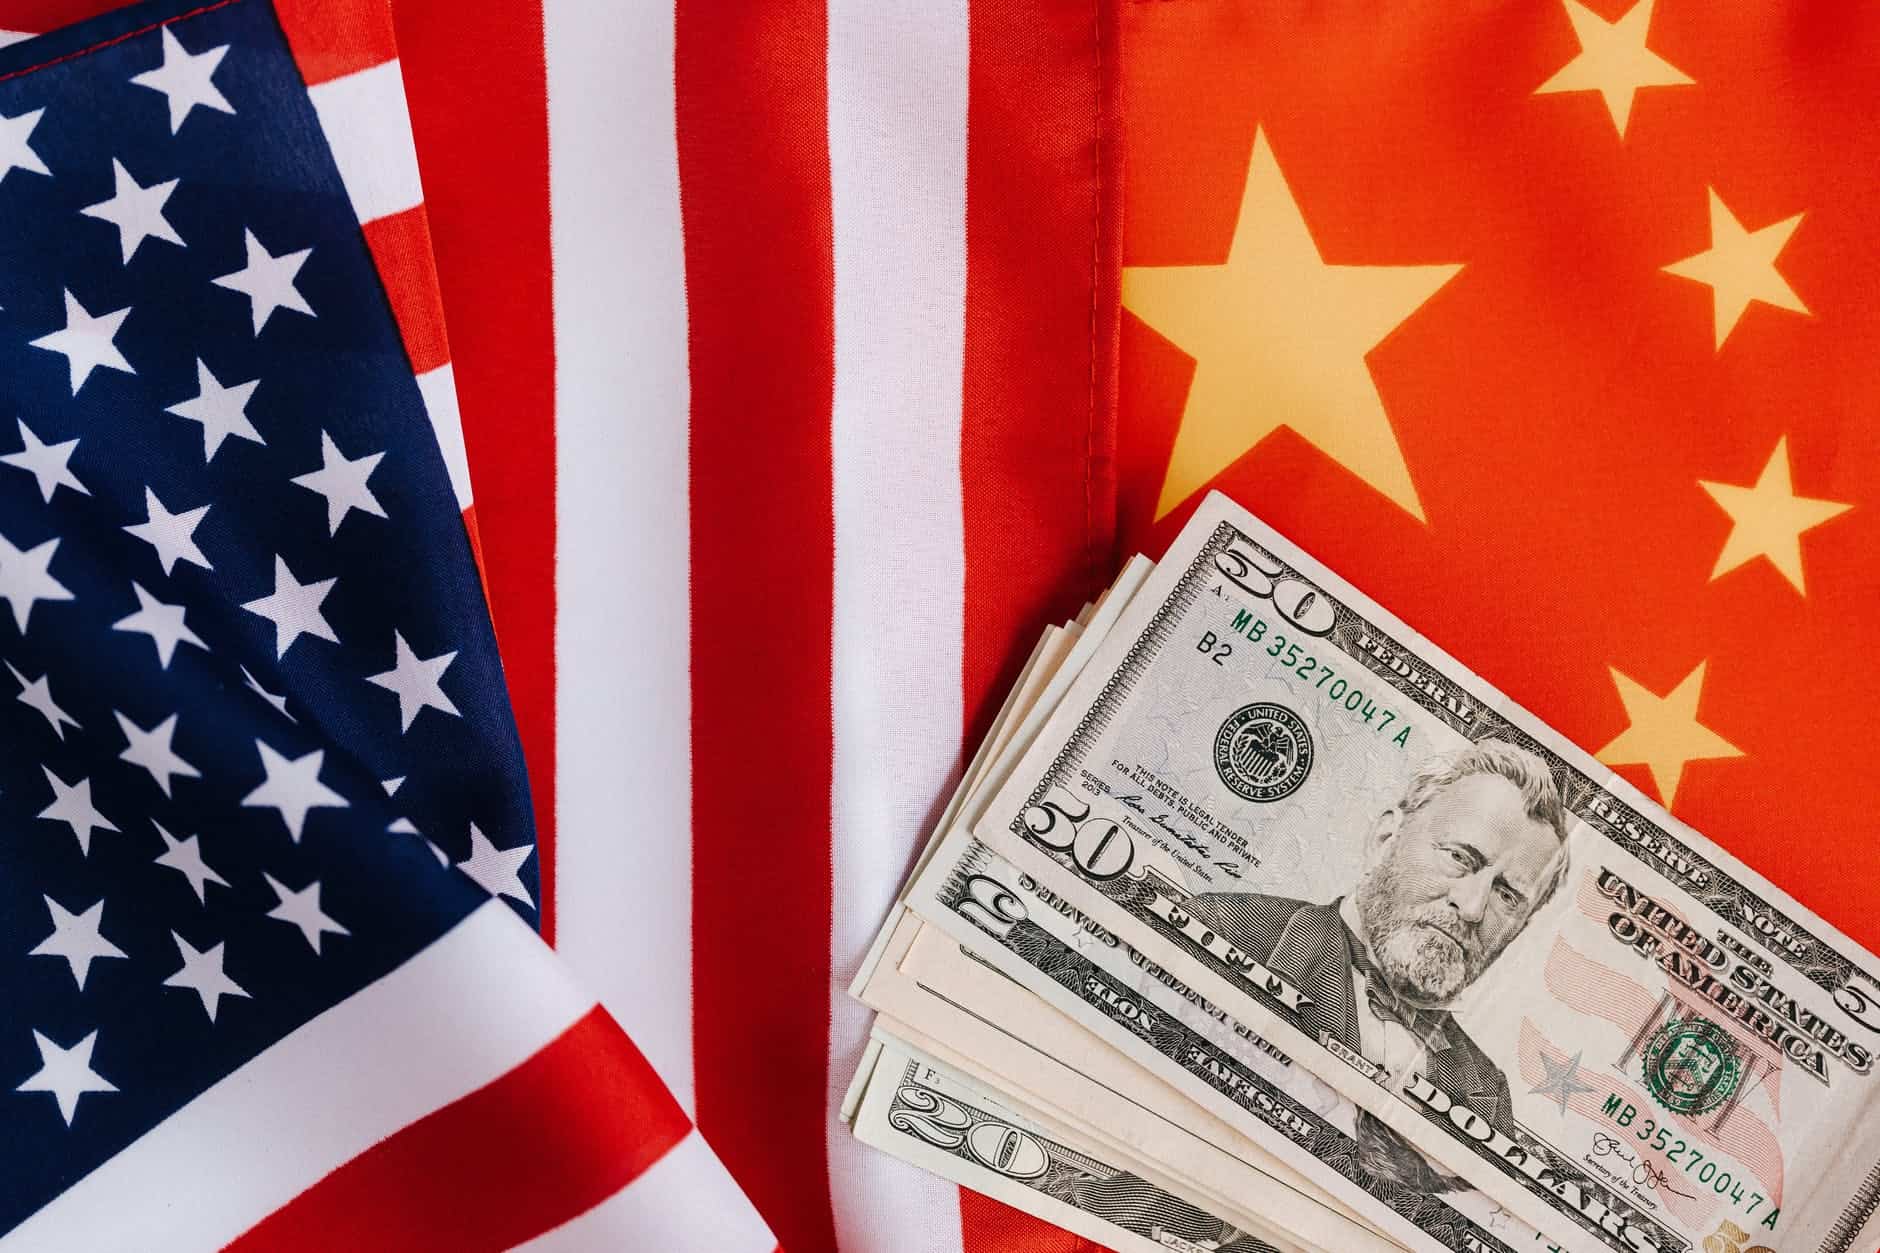 American USA China Chinese flag US dollars Ukraine